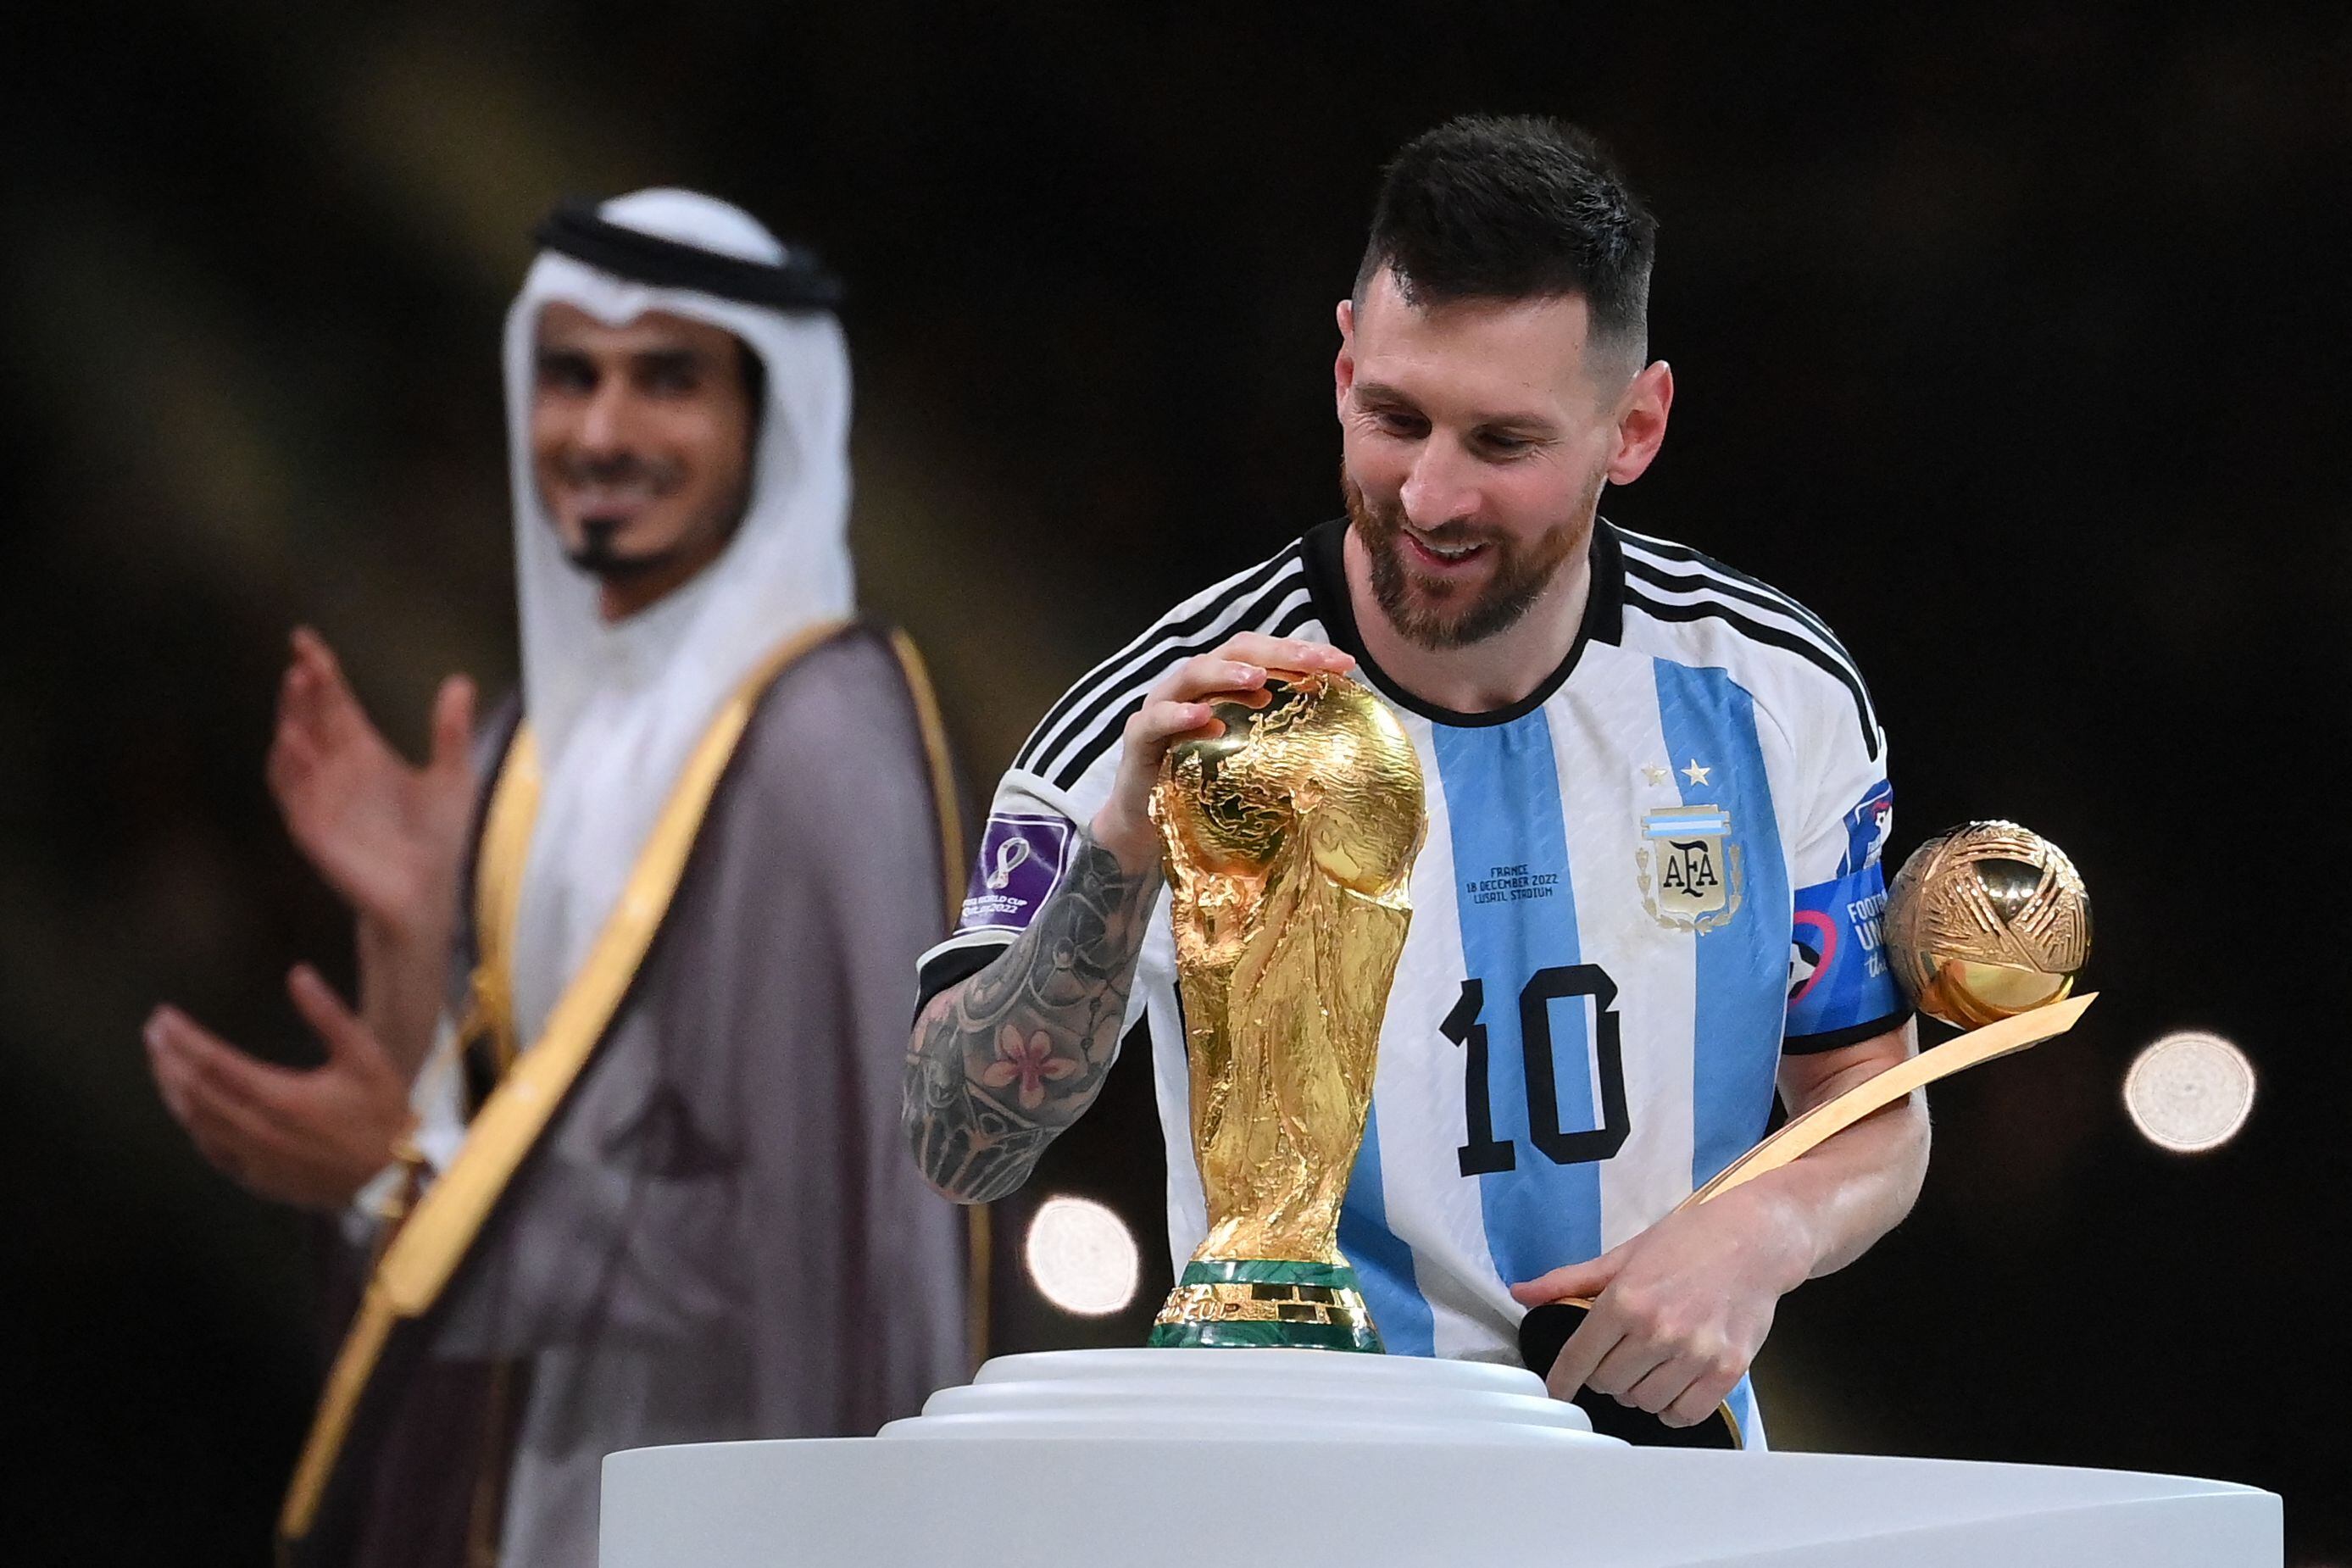 Argetina, de la mano de Lionel Messi, logró el campeonato mundial en Qatar 2022.